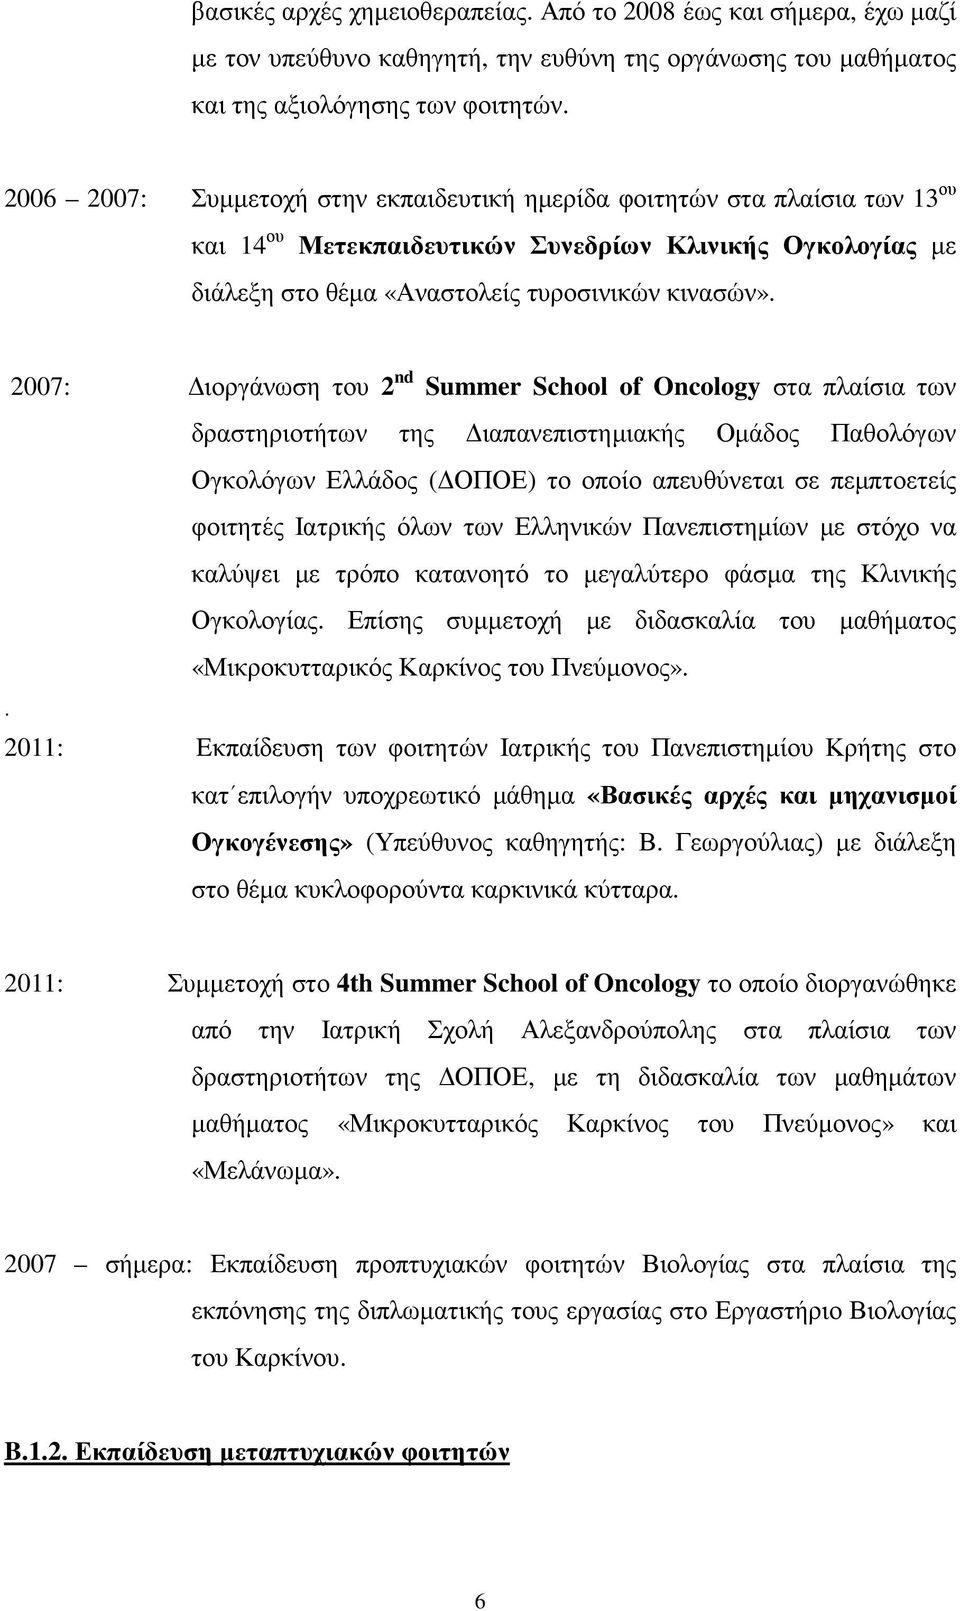 2007: ιοργάνωση του 2 nd Summer School of Oncology στα πλαίσια των δραστηριοτήτων της ιαπανεπιστηµιακής Οµάδος Παθολόγων Ογκολόγων Ελλάδος ( ΟΠΟΕ) το οποίο απευθύνεται σε πεµπτοετείς φοιτητές